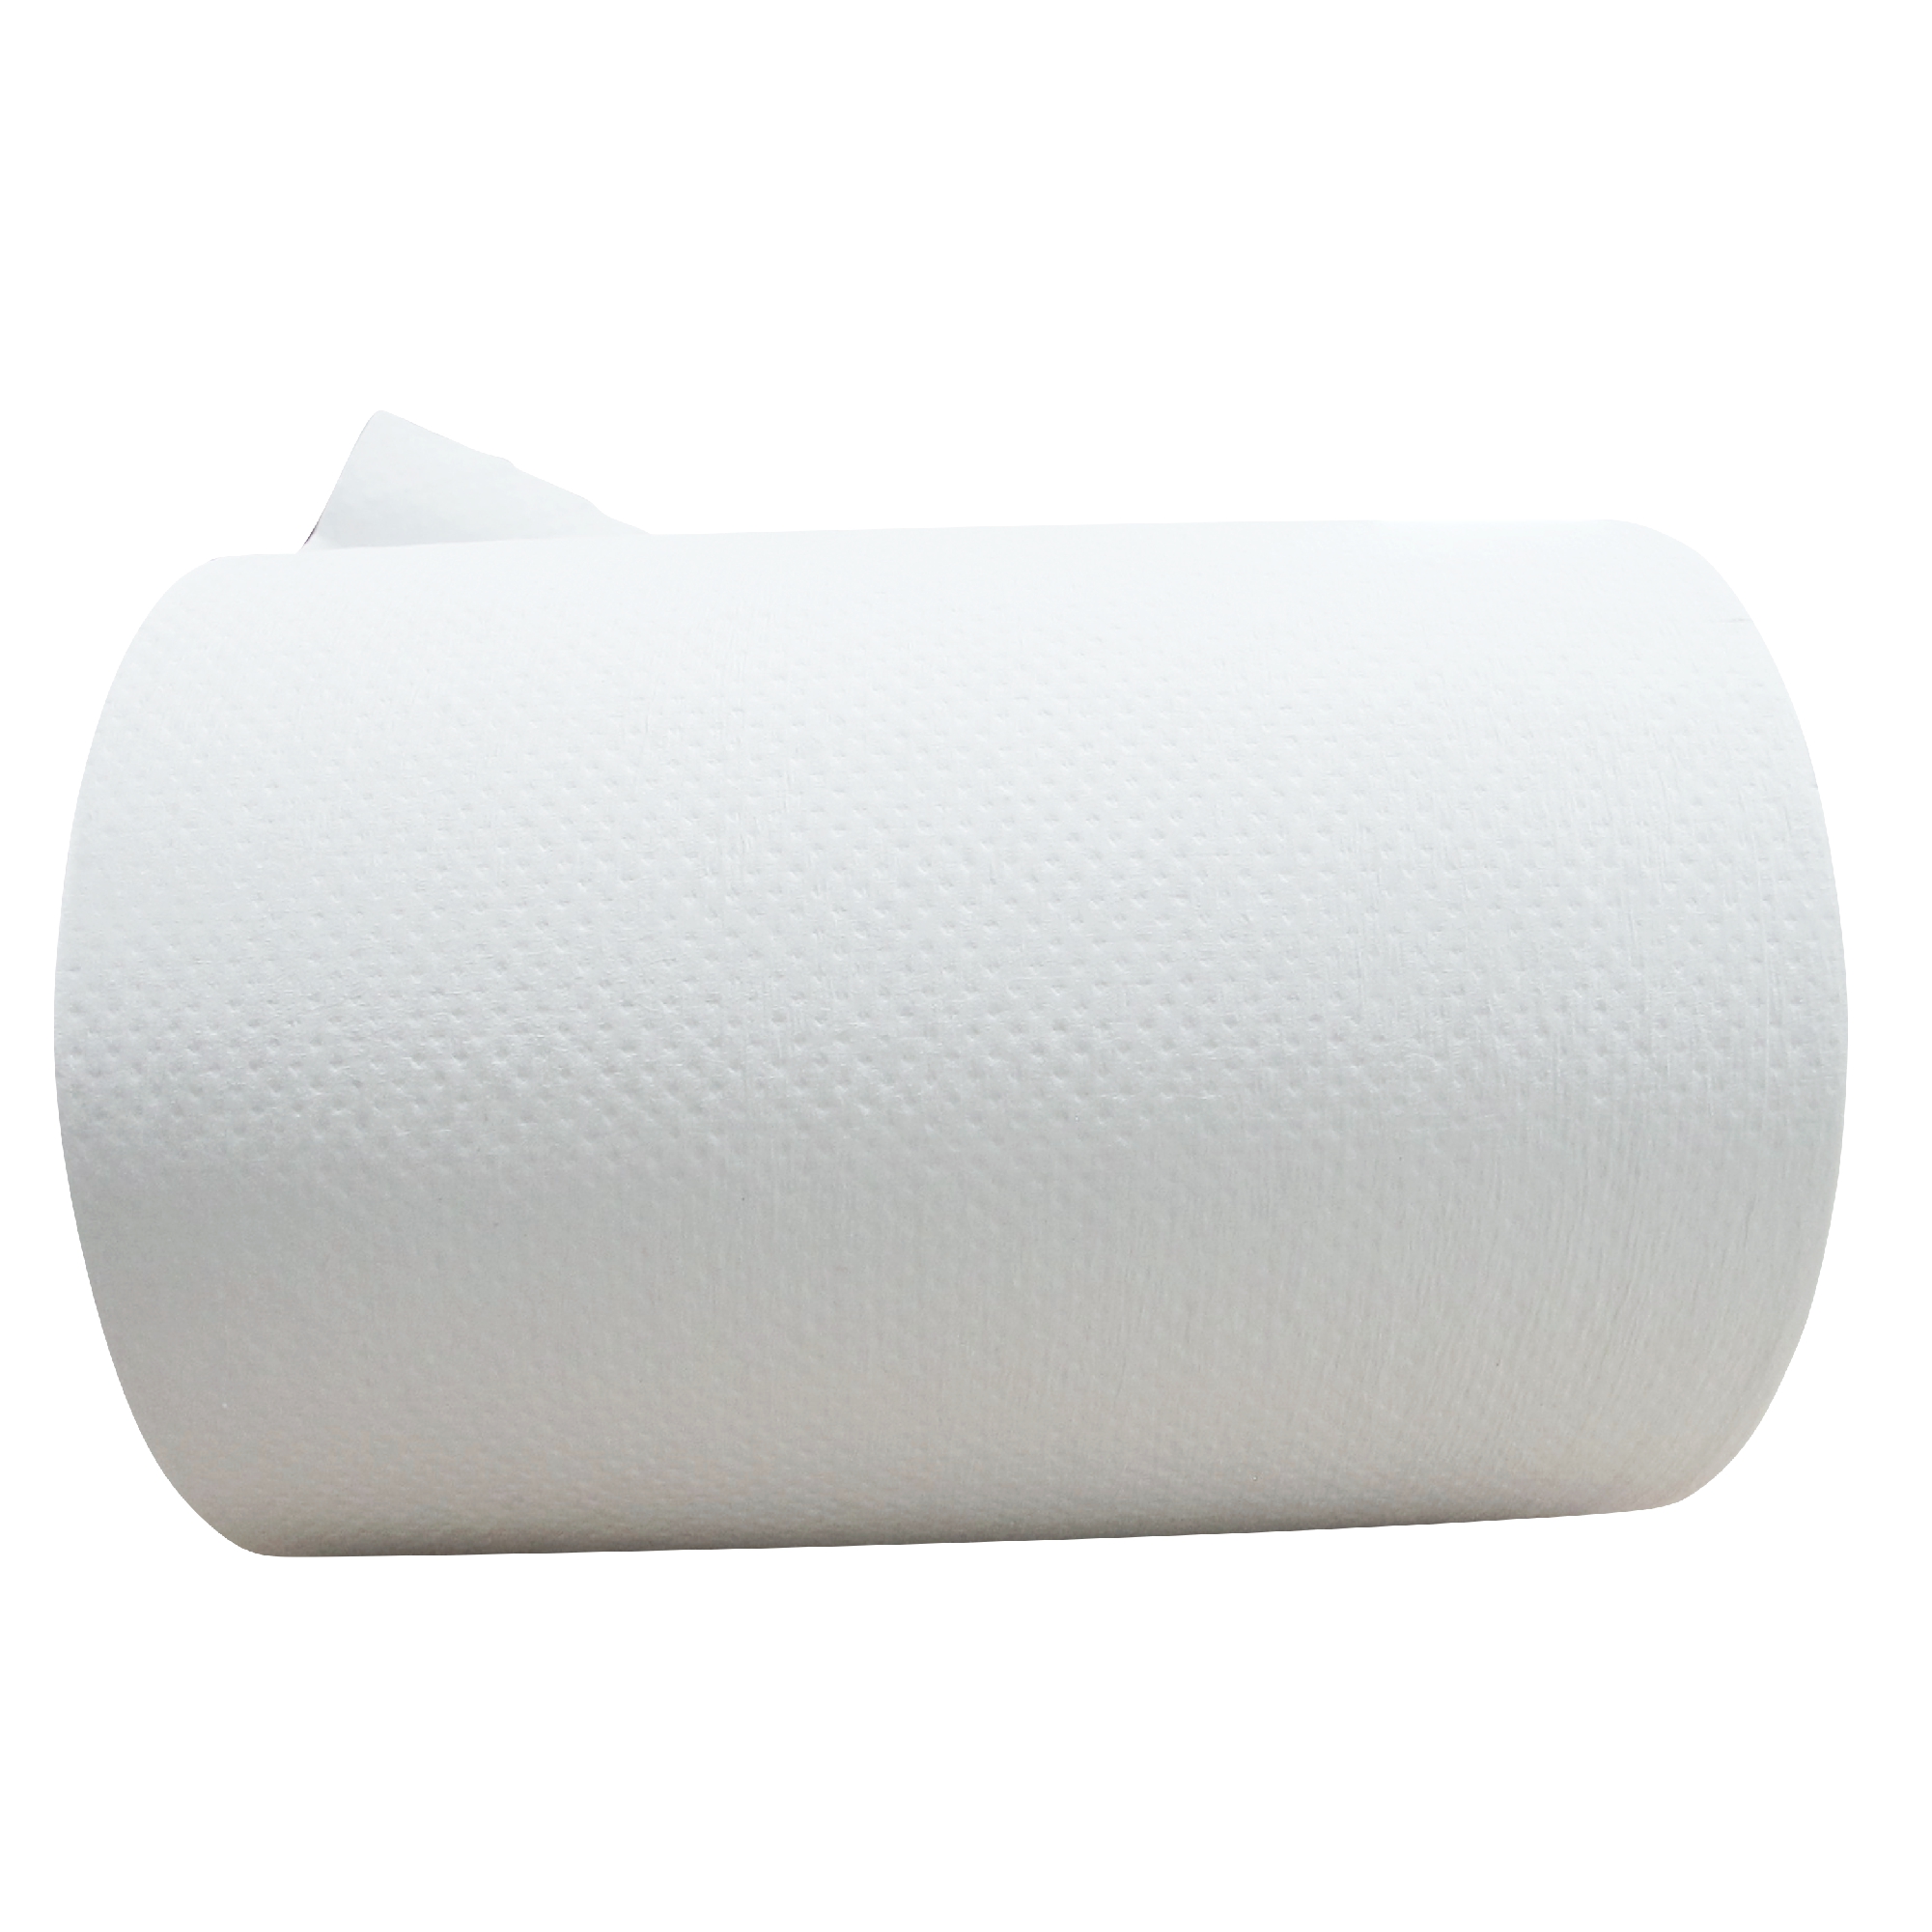 Greymoon 200-60 sistema AD-200 toalla en rollo color blanca hoja sencilla auto-corte, caja con 8 rollos de 200 mts cada uno